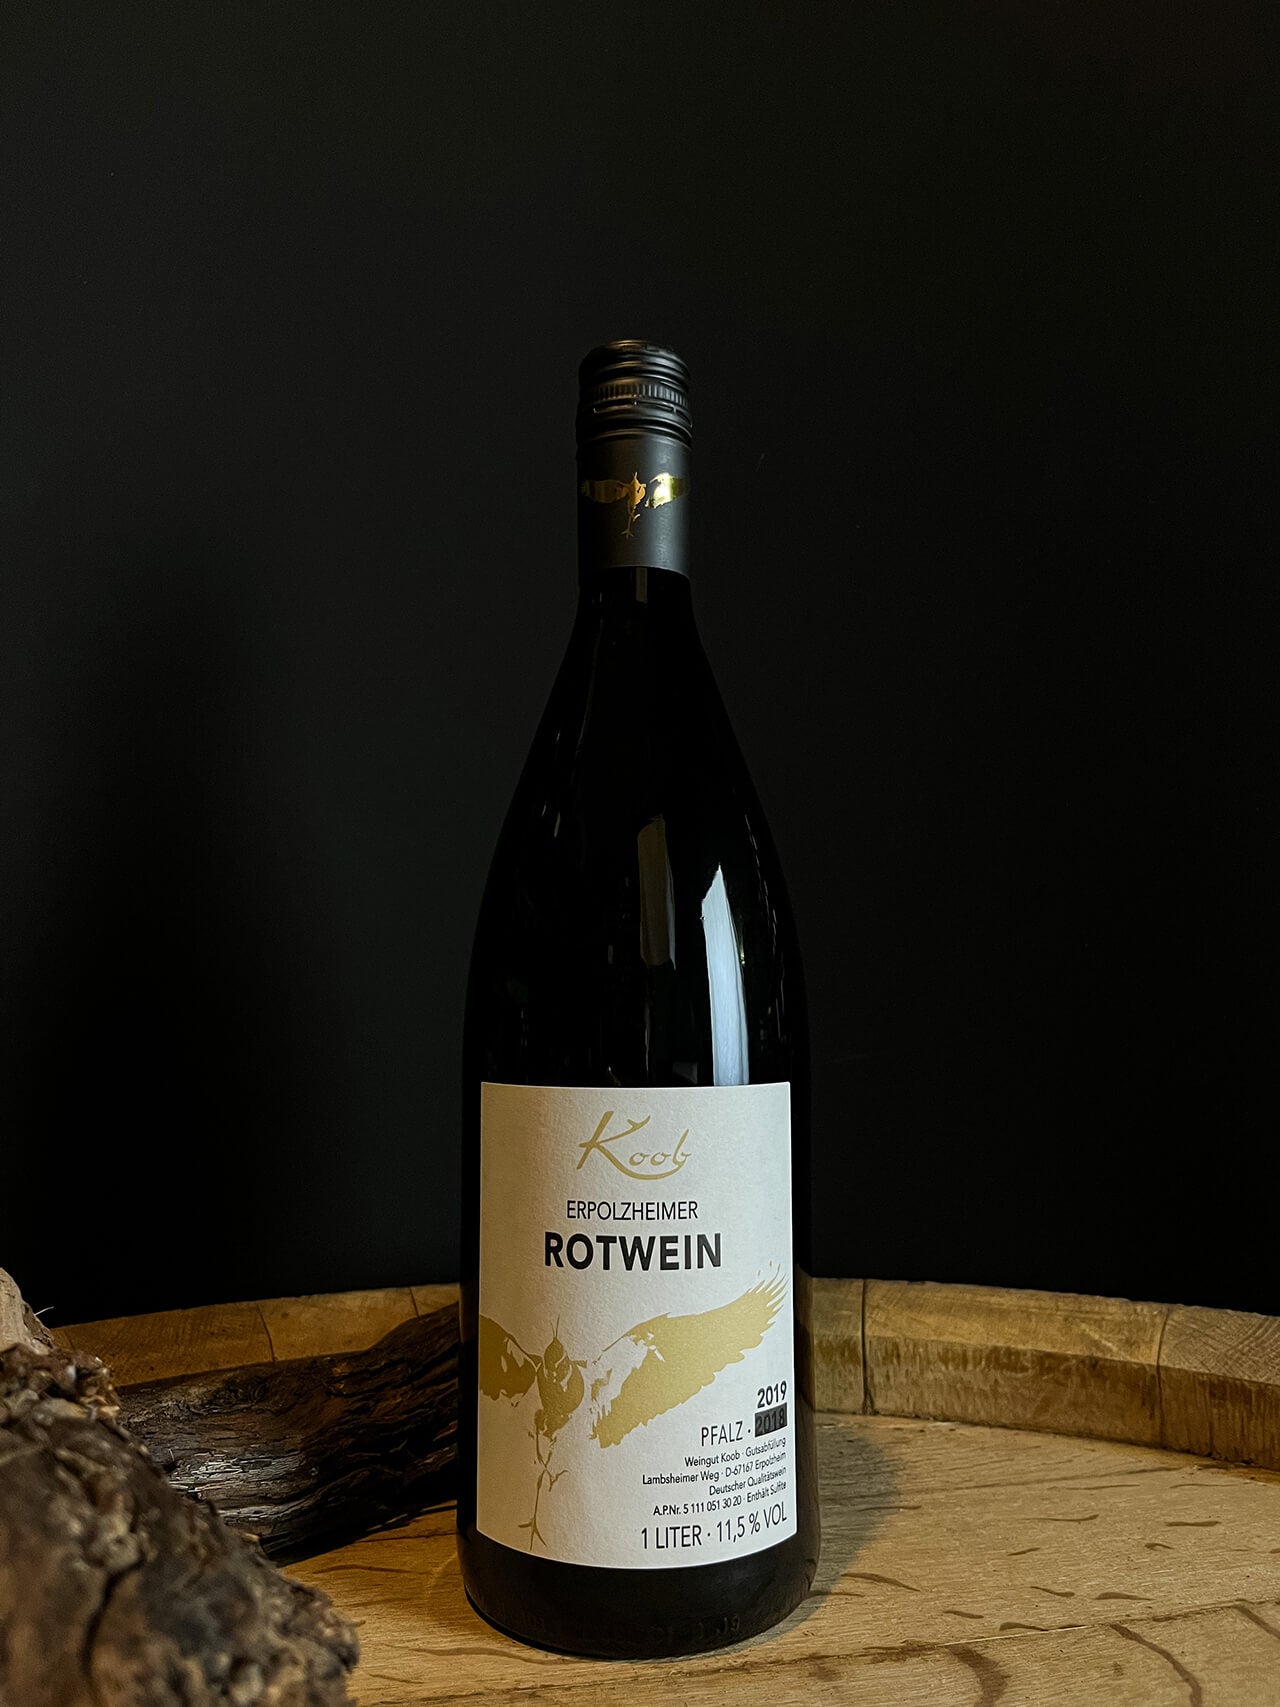 Erpolzheimer Rotwein lieblich – Koob Weingut